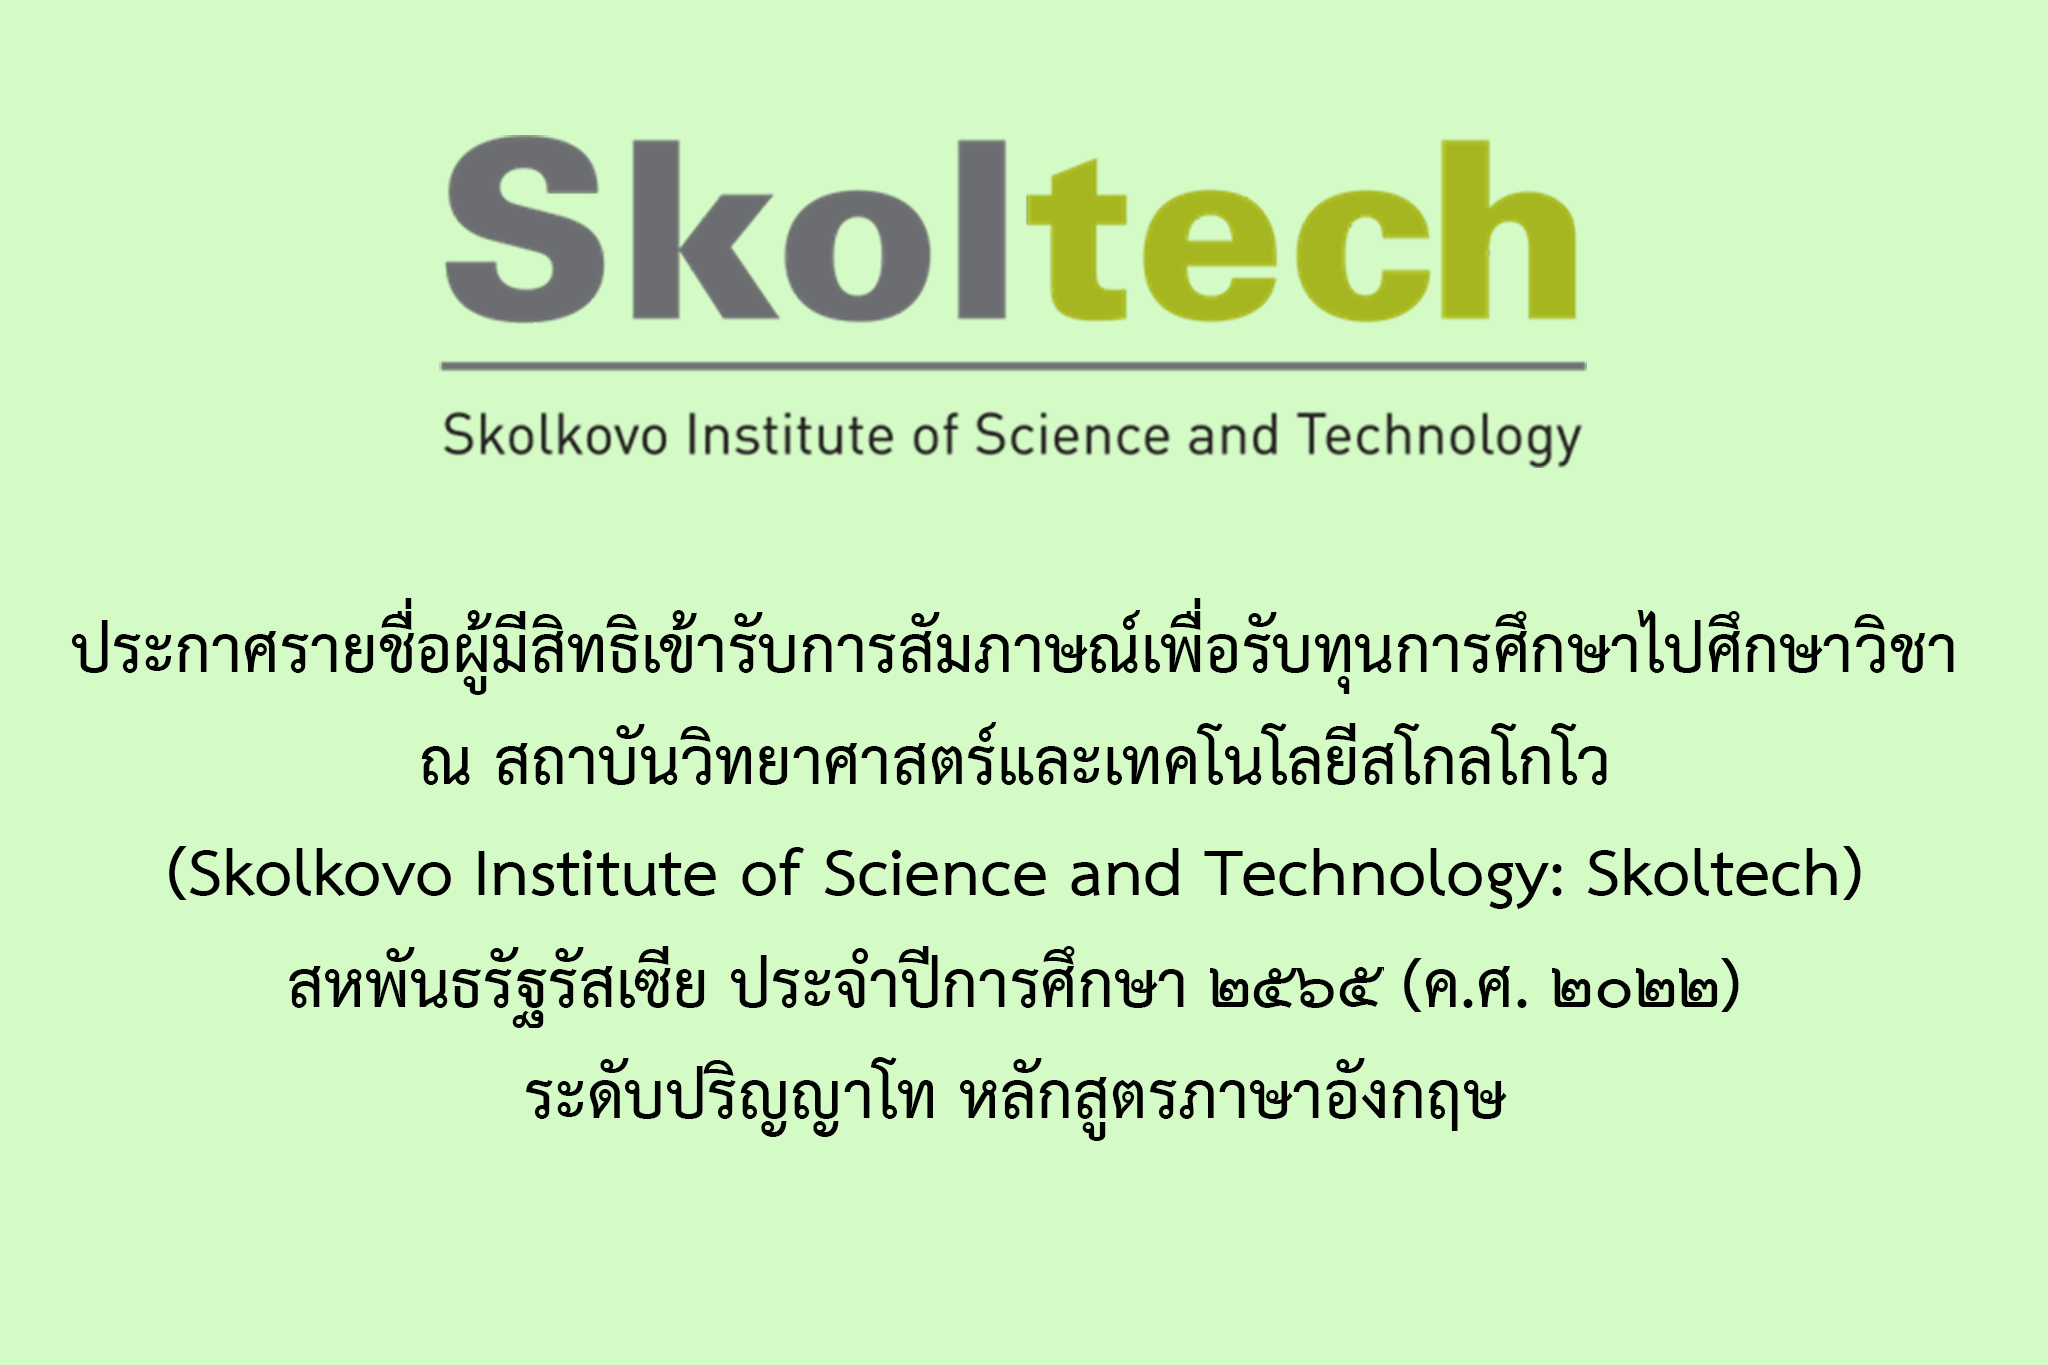 ประกาศรายชื่อผู้มีสิทธิเข้ารับการสัมภาษณ์เพื่อรับทุนการศึกษาไปศึกษาวิชา ณ สถาบันวิทยาศาสตร์และเทคโนโลยีสโกลโกโว (Skolkovo Institute of Science and Technology: Skoltech) สหพันธรัฐรัสเซีย ประจำปีการศึกษา ๒๕๖๕ (ค.ศ. ๒๐๒๒) ระดับปริญญาโท หลักสูตรภาษาอังกฤษ